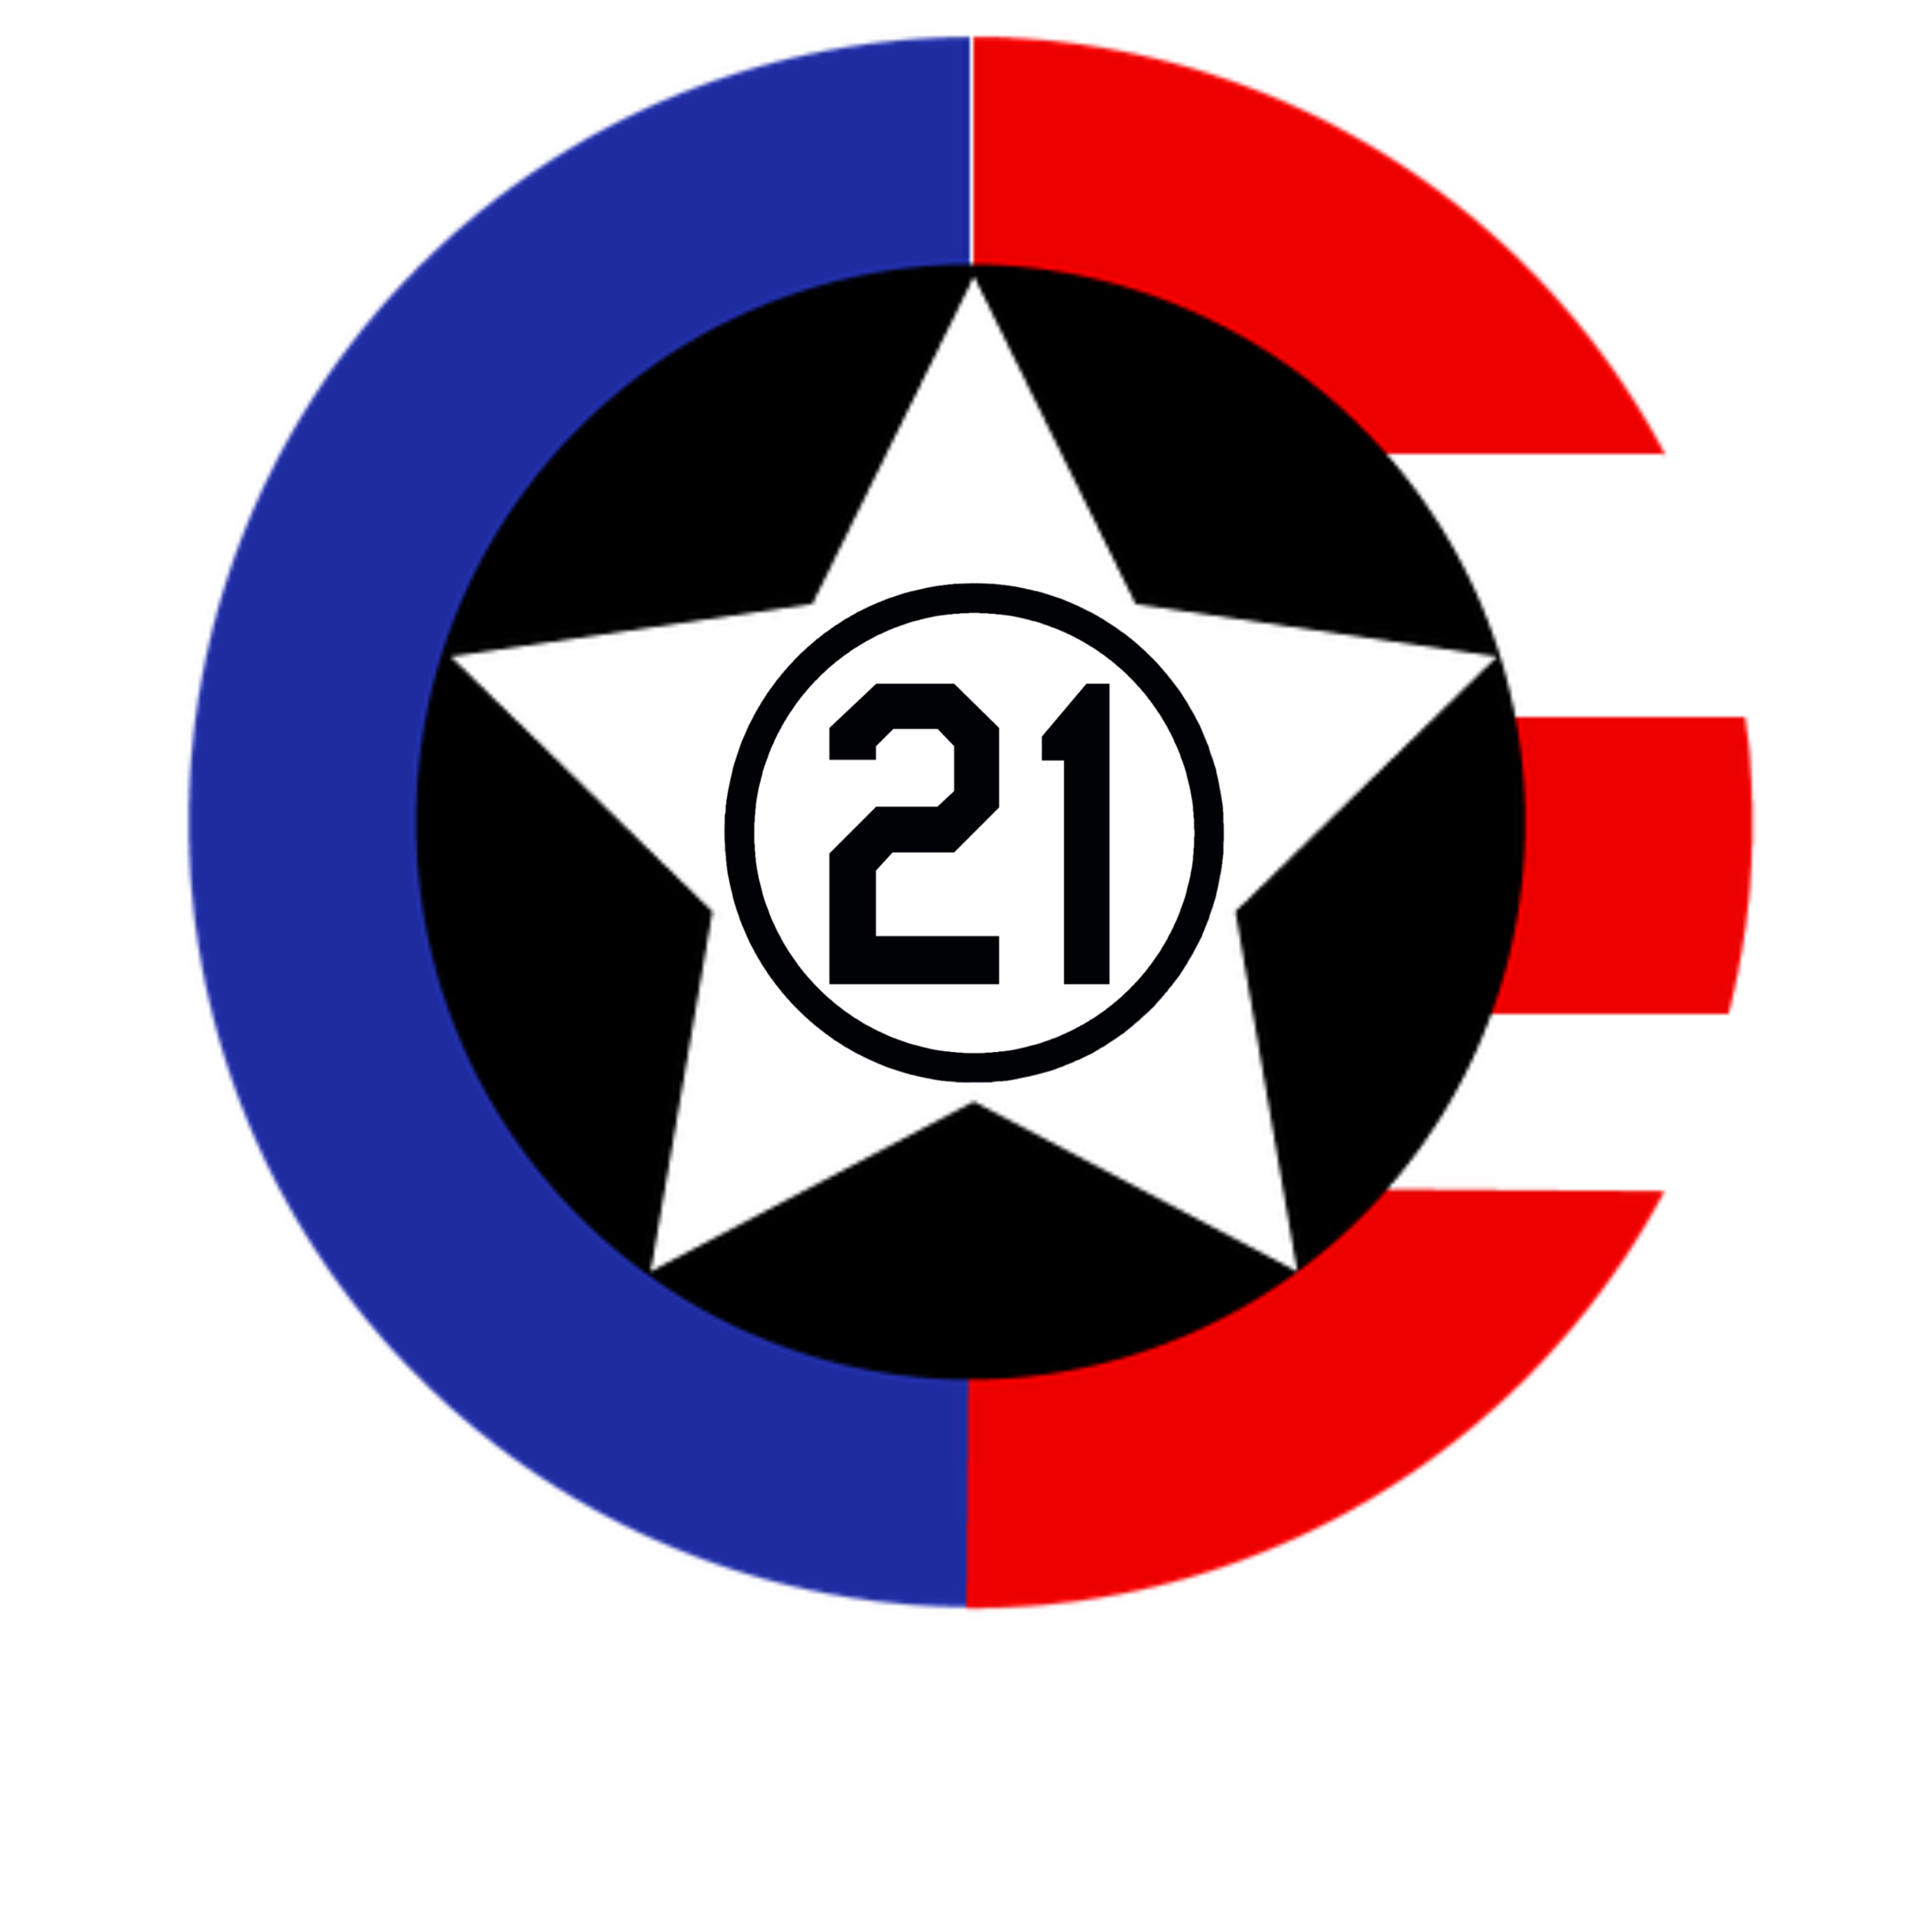 Borincano21